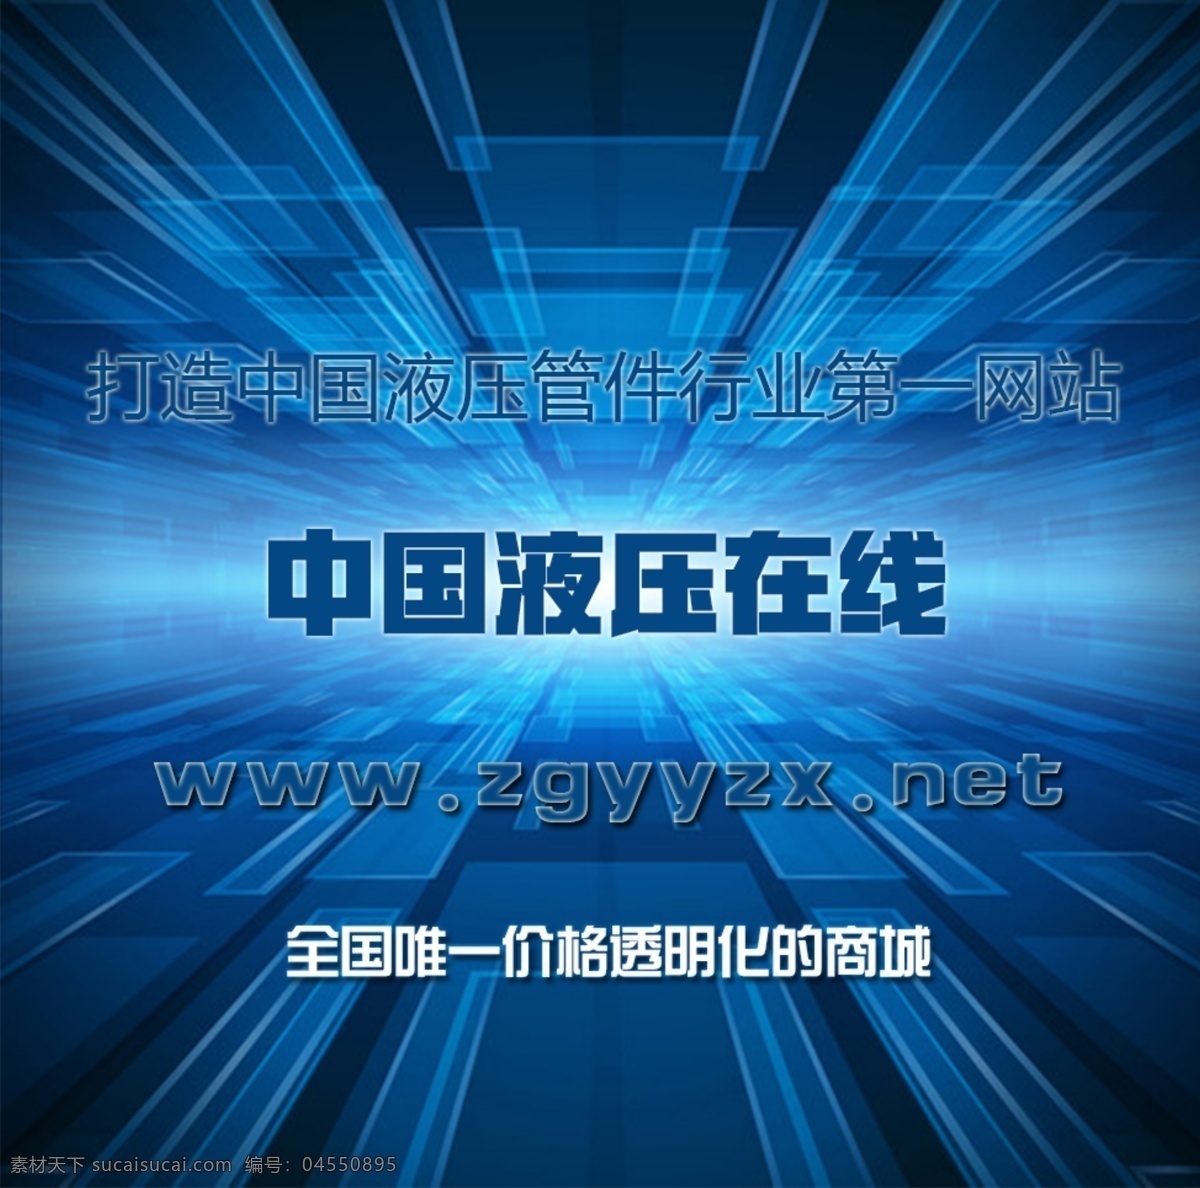 淘宝 天猫 液压 管件 网站宣传 图 网站 宣传 淘宝素材 淘宝设计 淘宝模板下载 蓝色